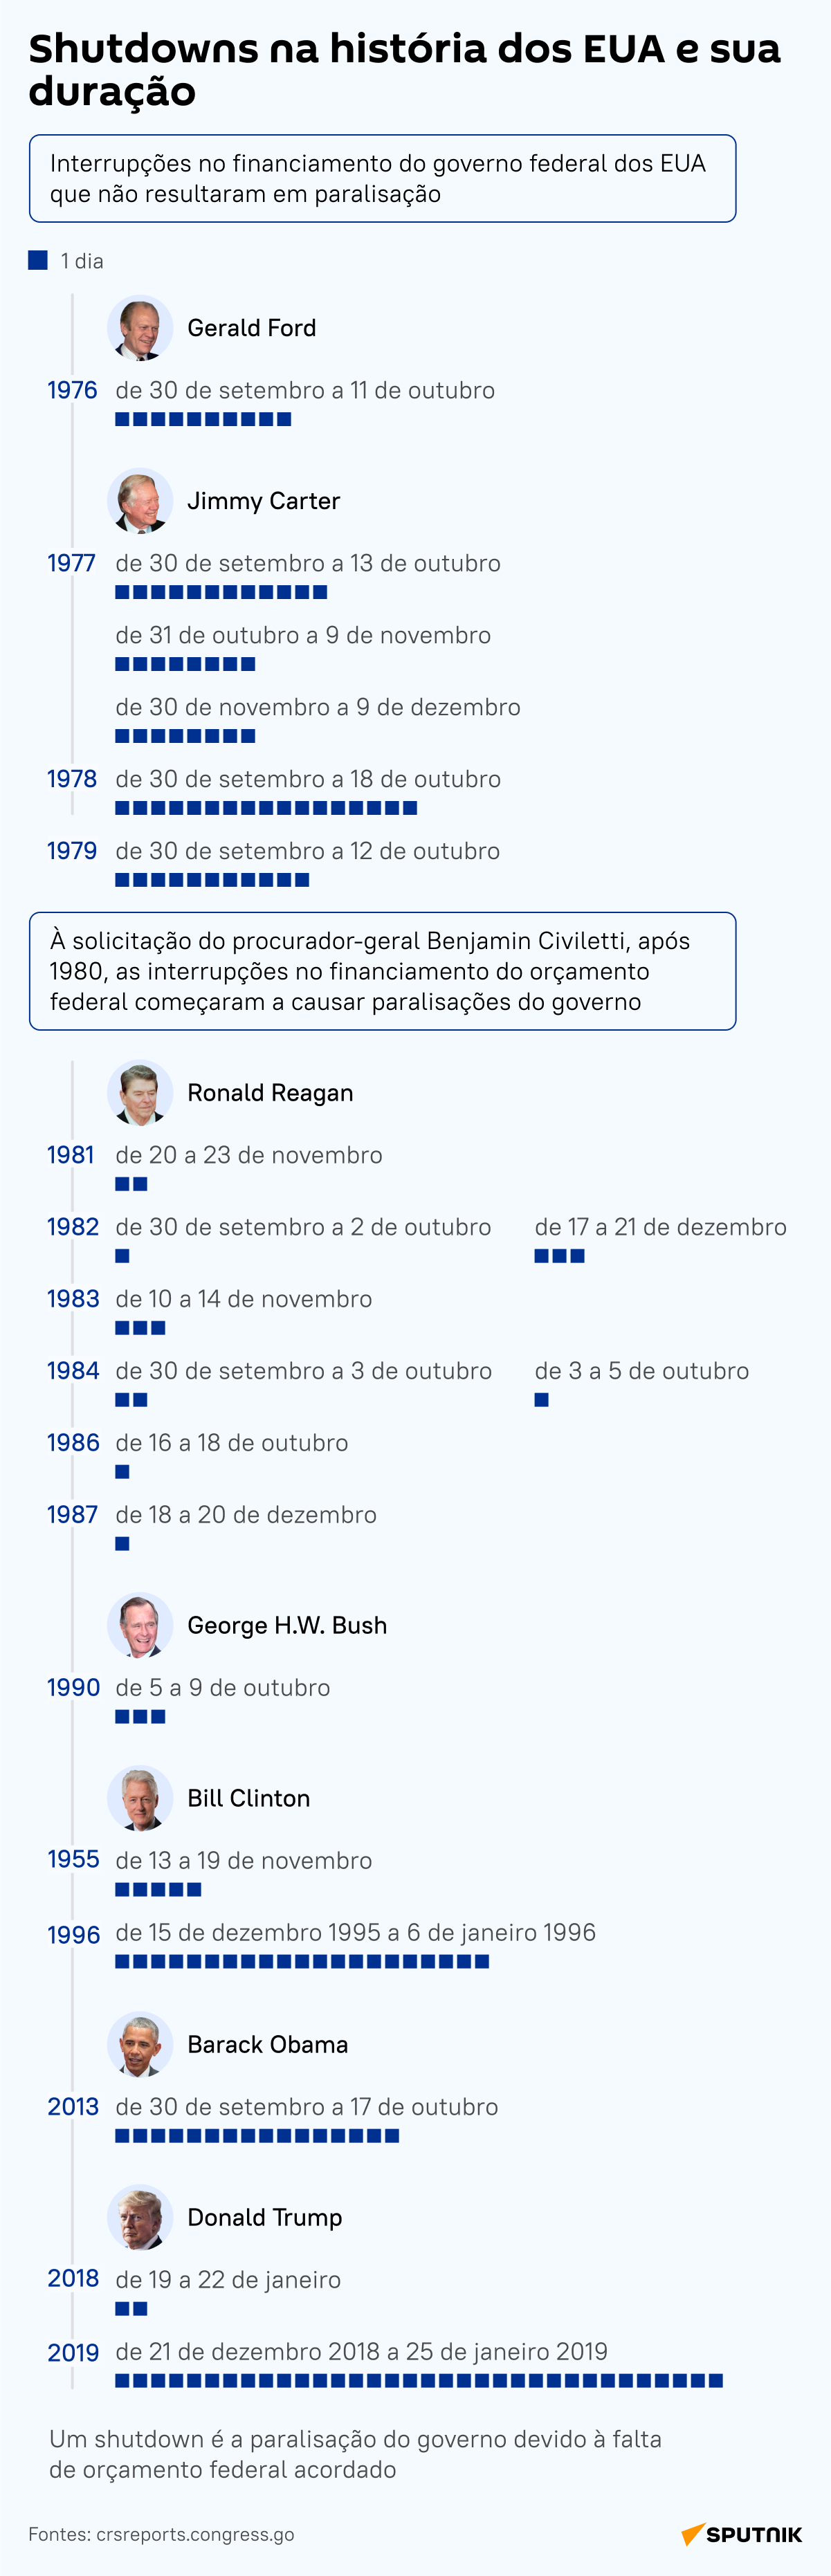 História se repete? Casos de paralisações do governo nos EUA - Sputnik Brasil